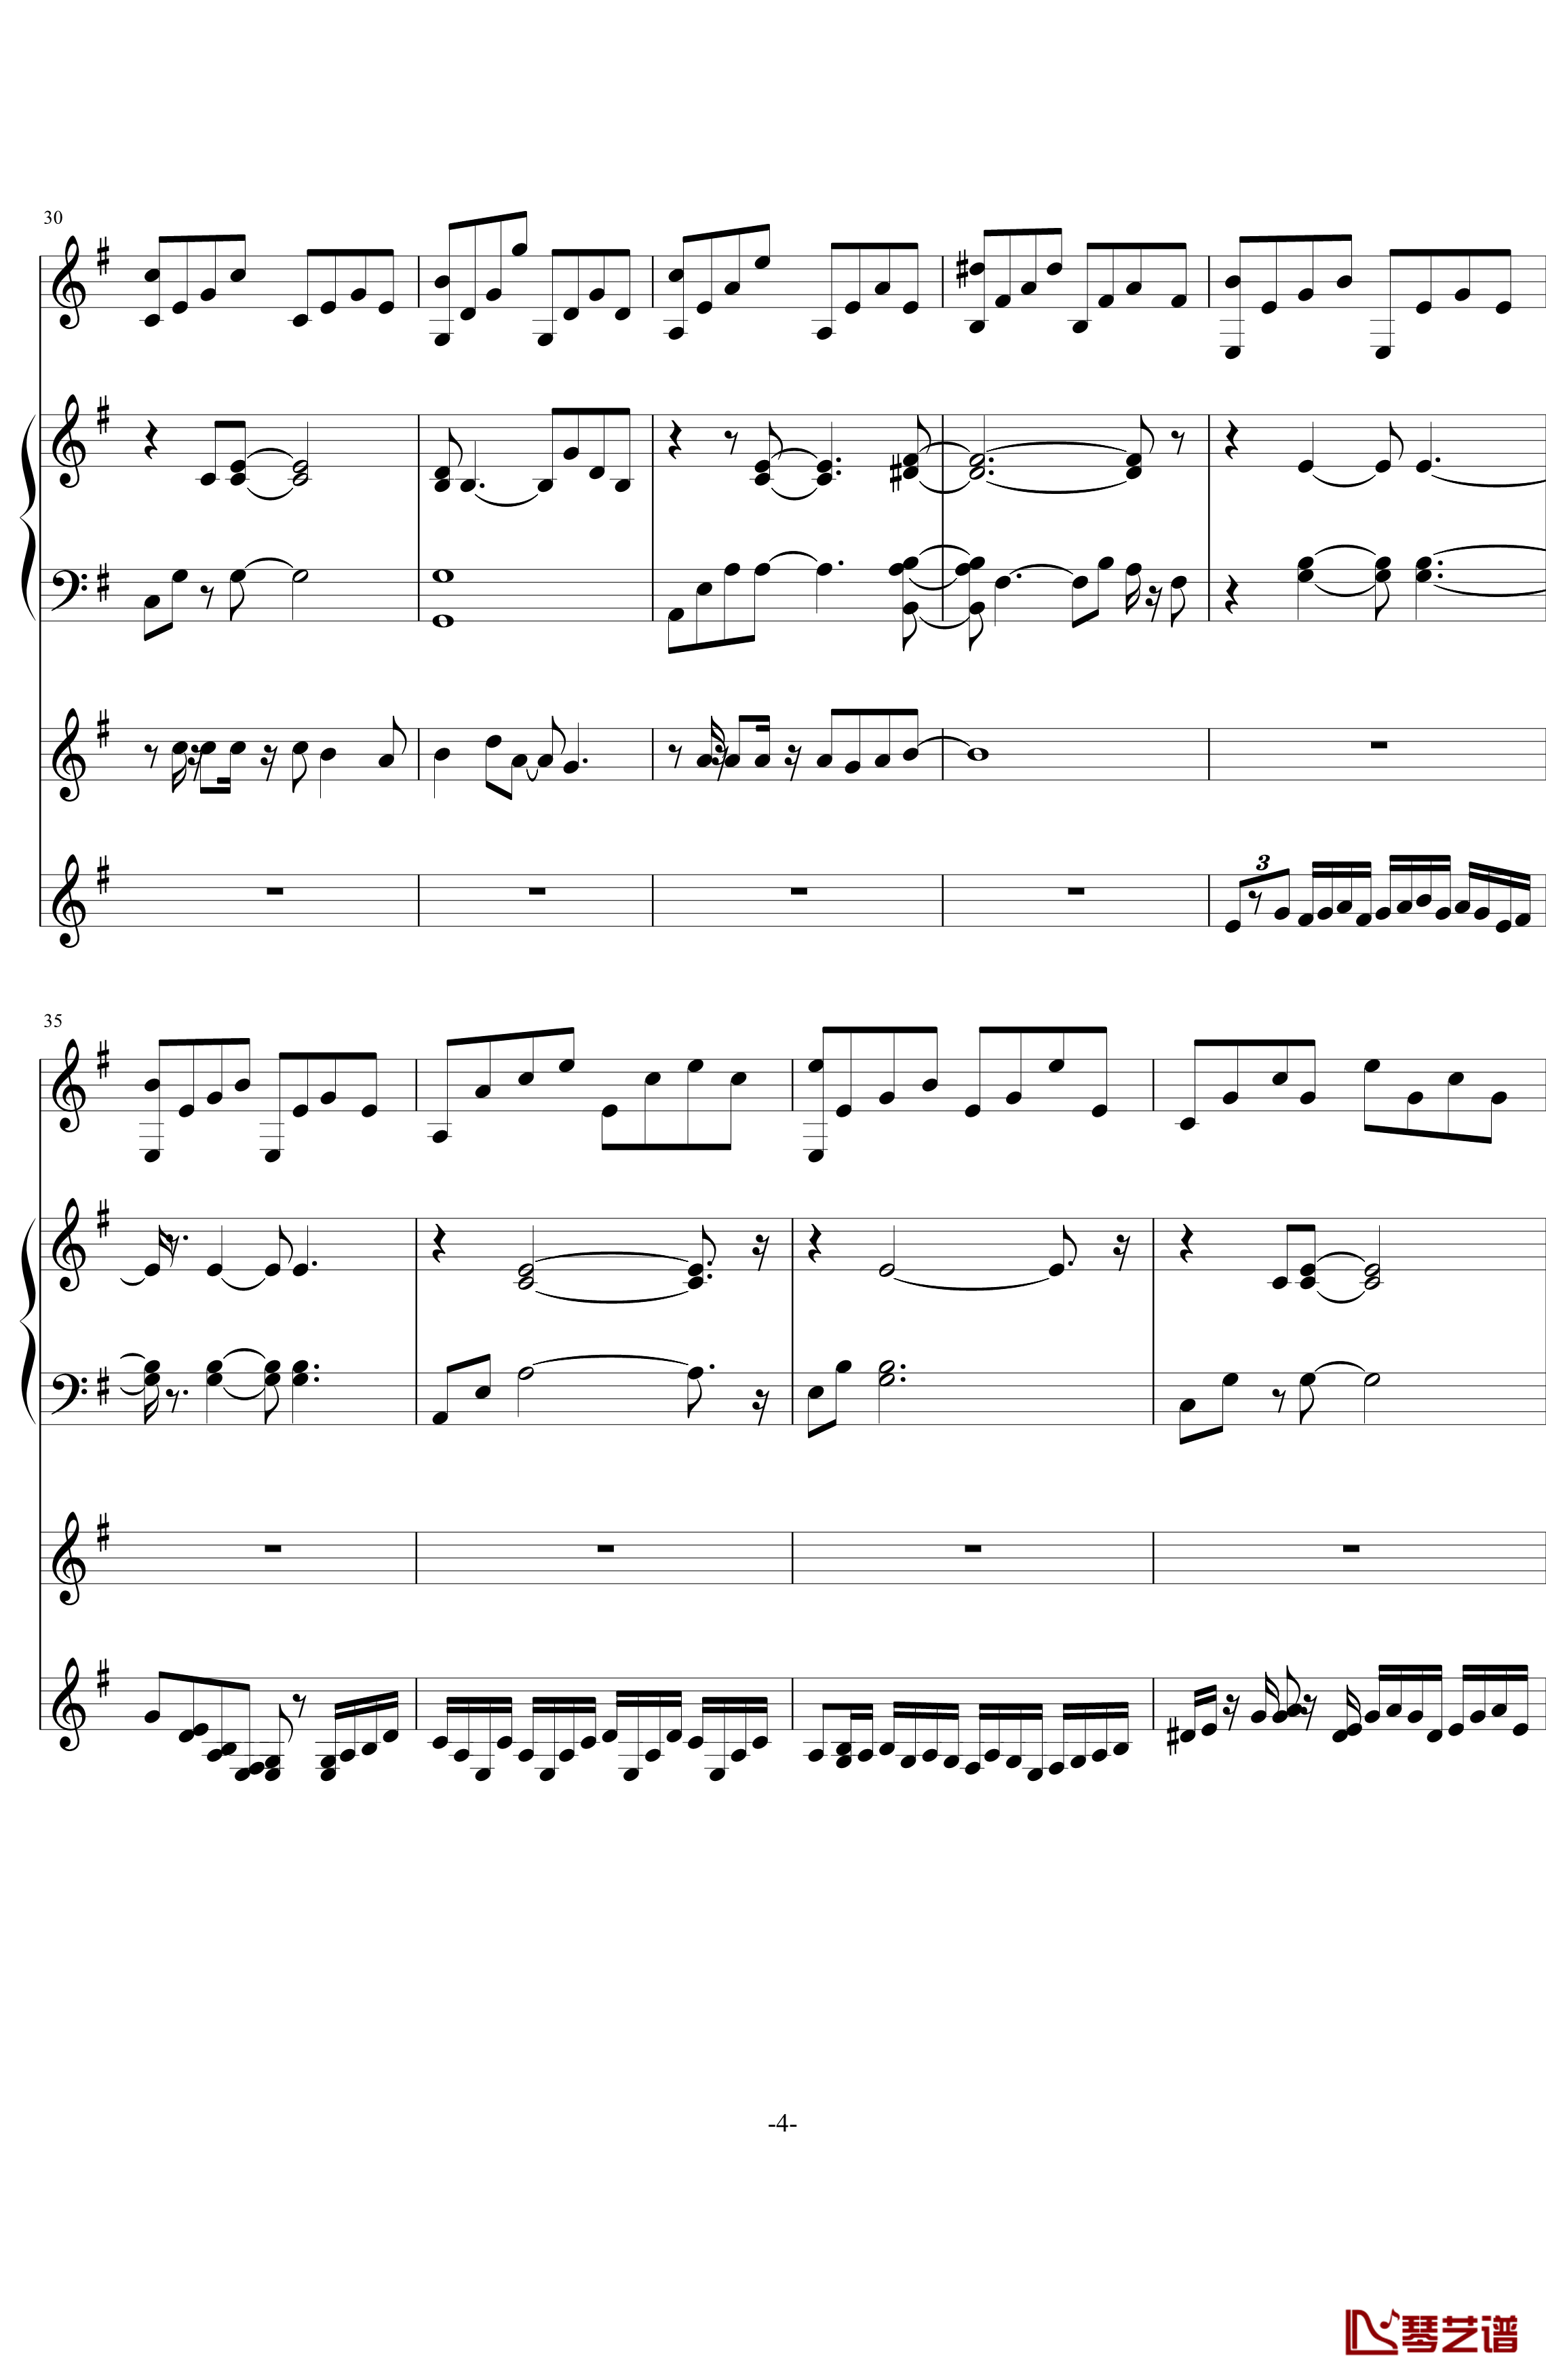 中提琴协奏版钢琴谱-含有钢琴独奏-老奠4